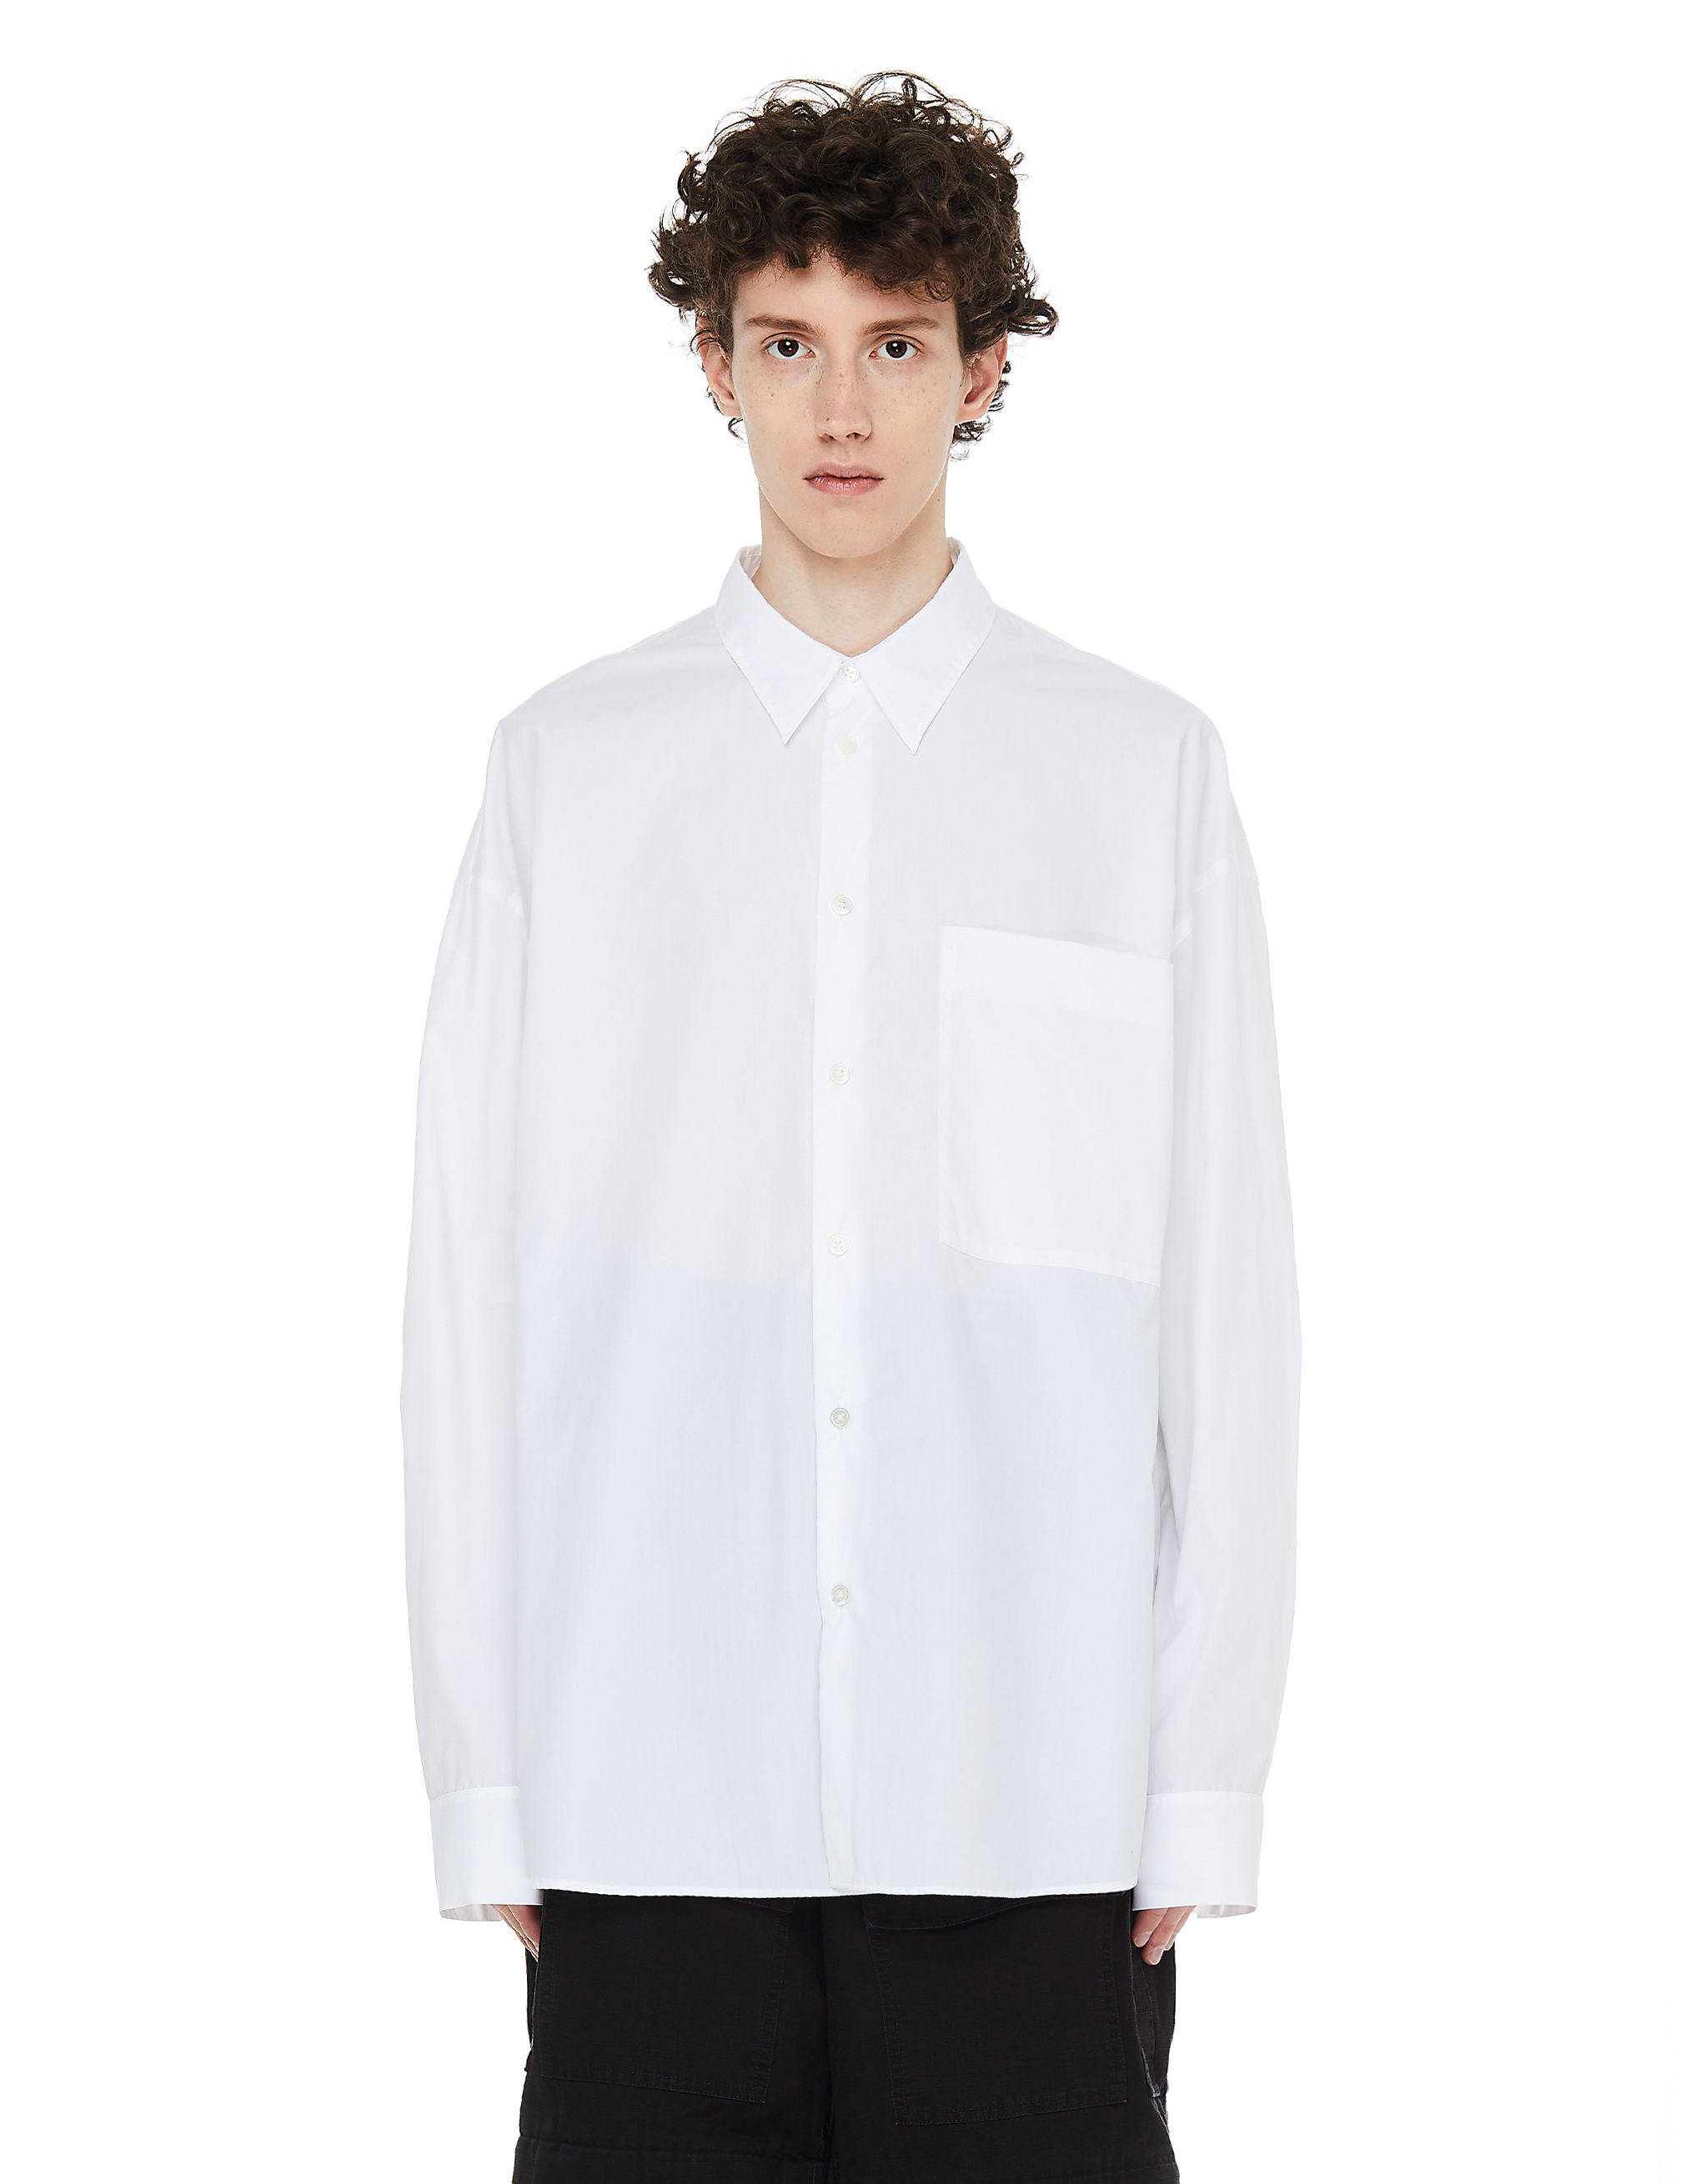 Белая рубашка с нагрудным карманом Ann Demeulemeester 2008-3616-115-001, размер L;M